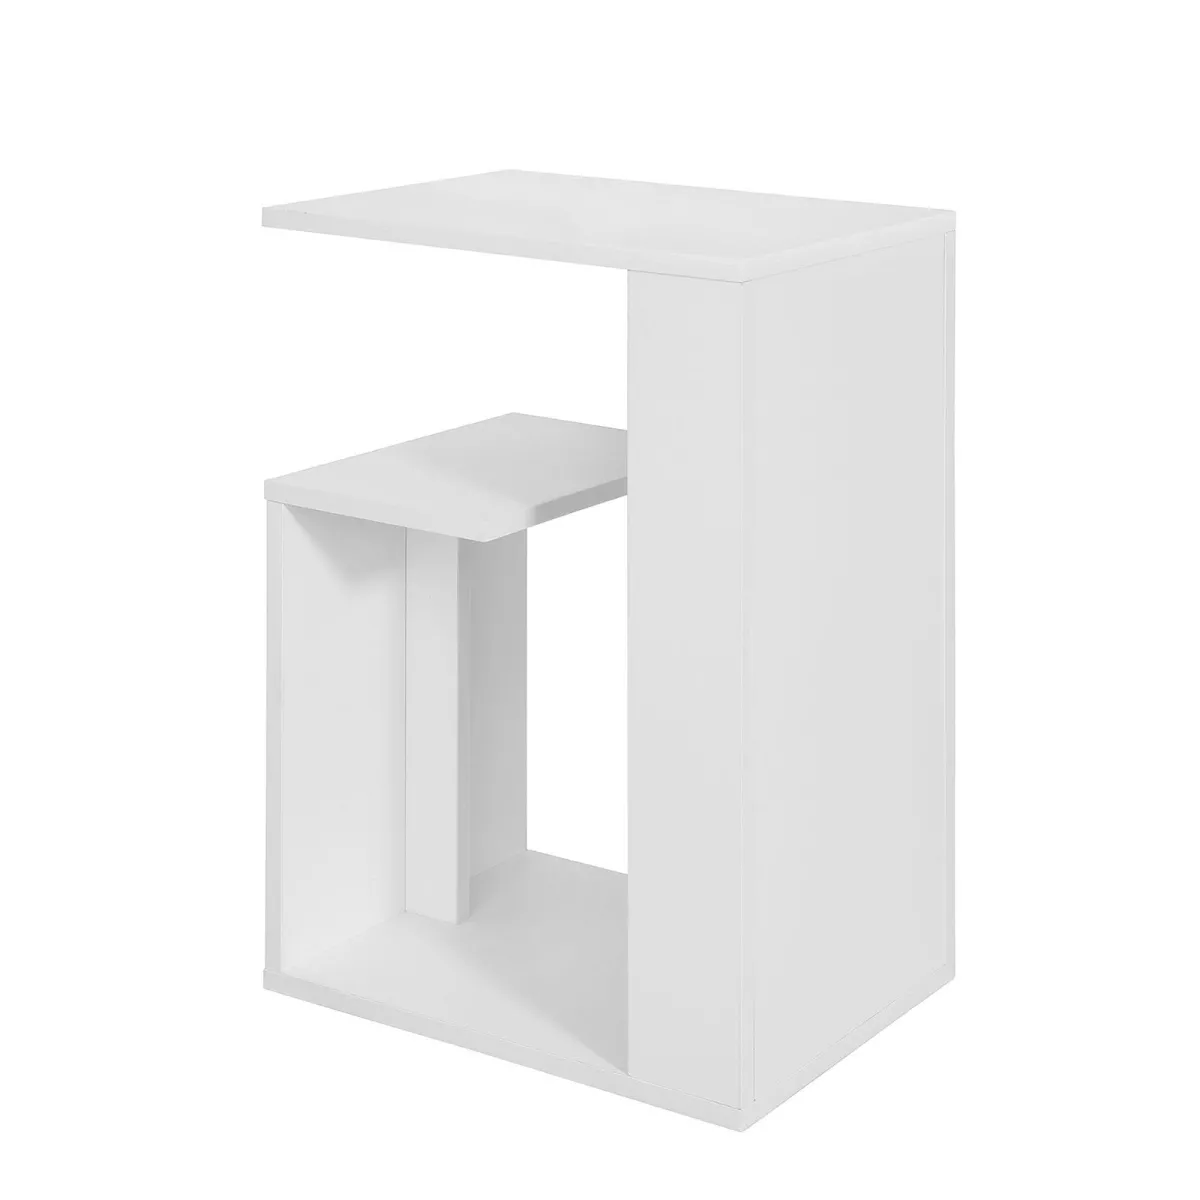 #1 - Sofabord / sidebord i moderne stil, hvid